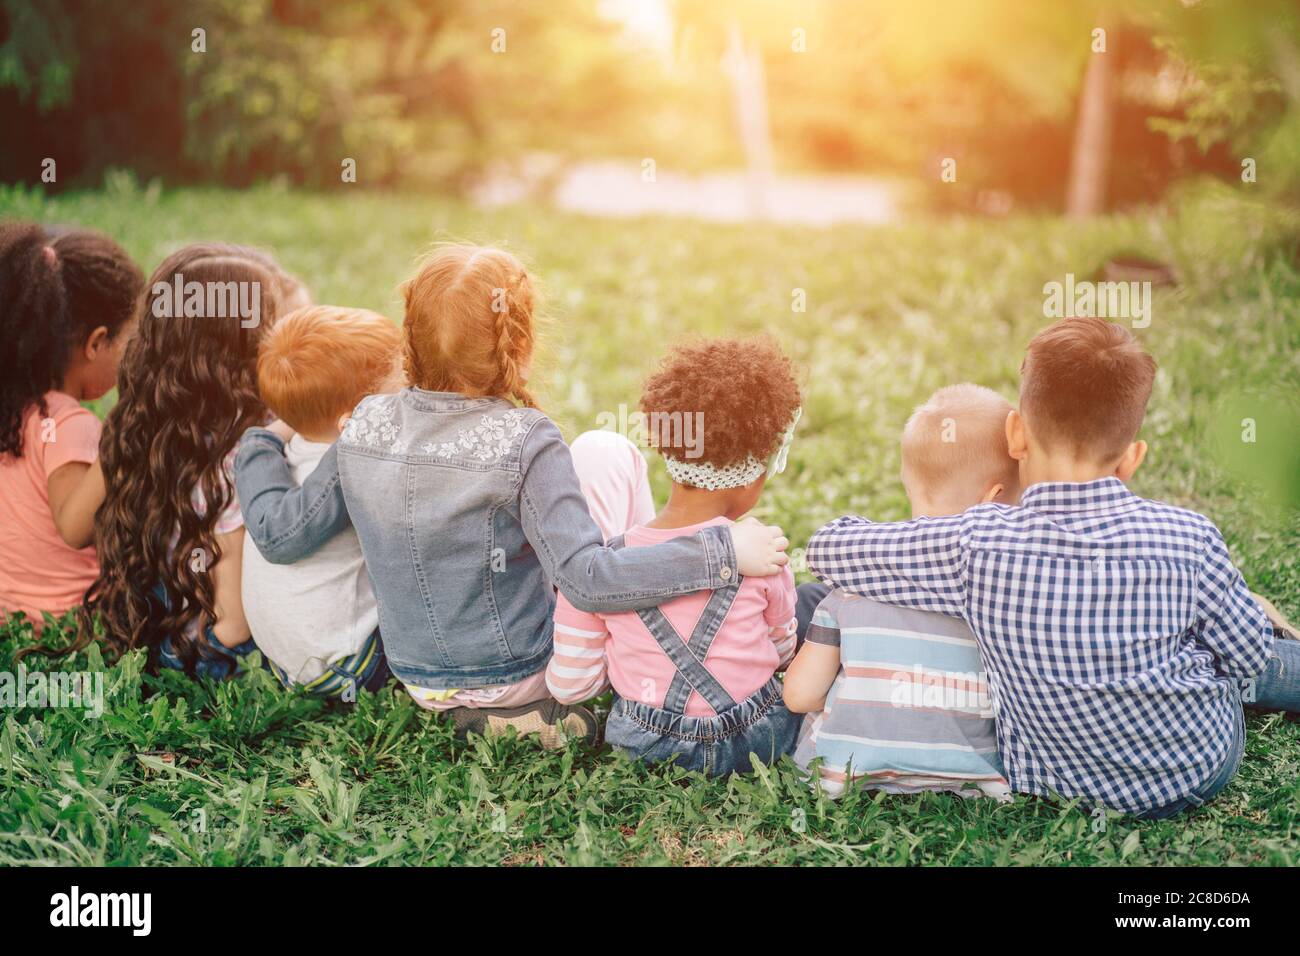 Vue arrière de jolis enfants assis sur l'herbe verte et de détente. Extérieur. Le concept de l'enfance et de l'amitié. Banque D'Images